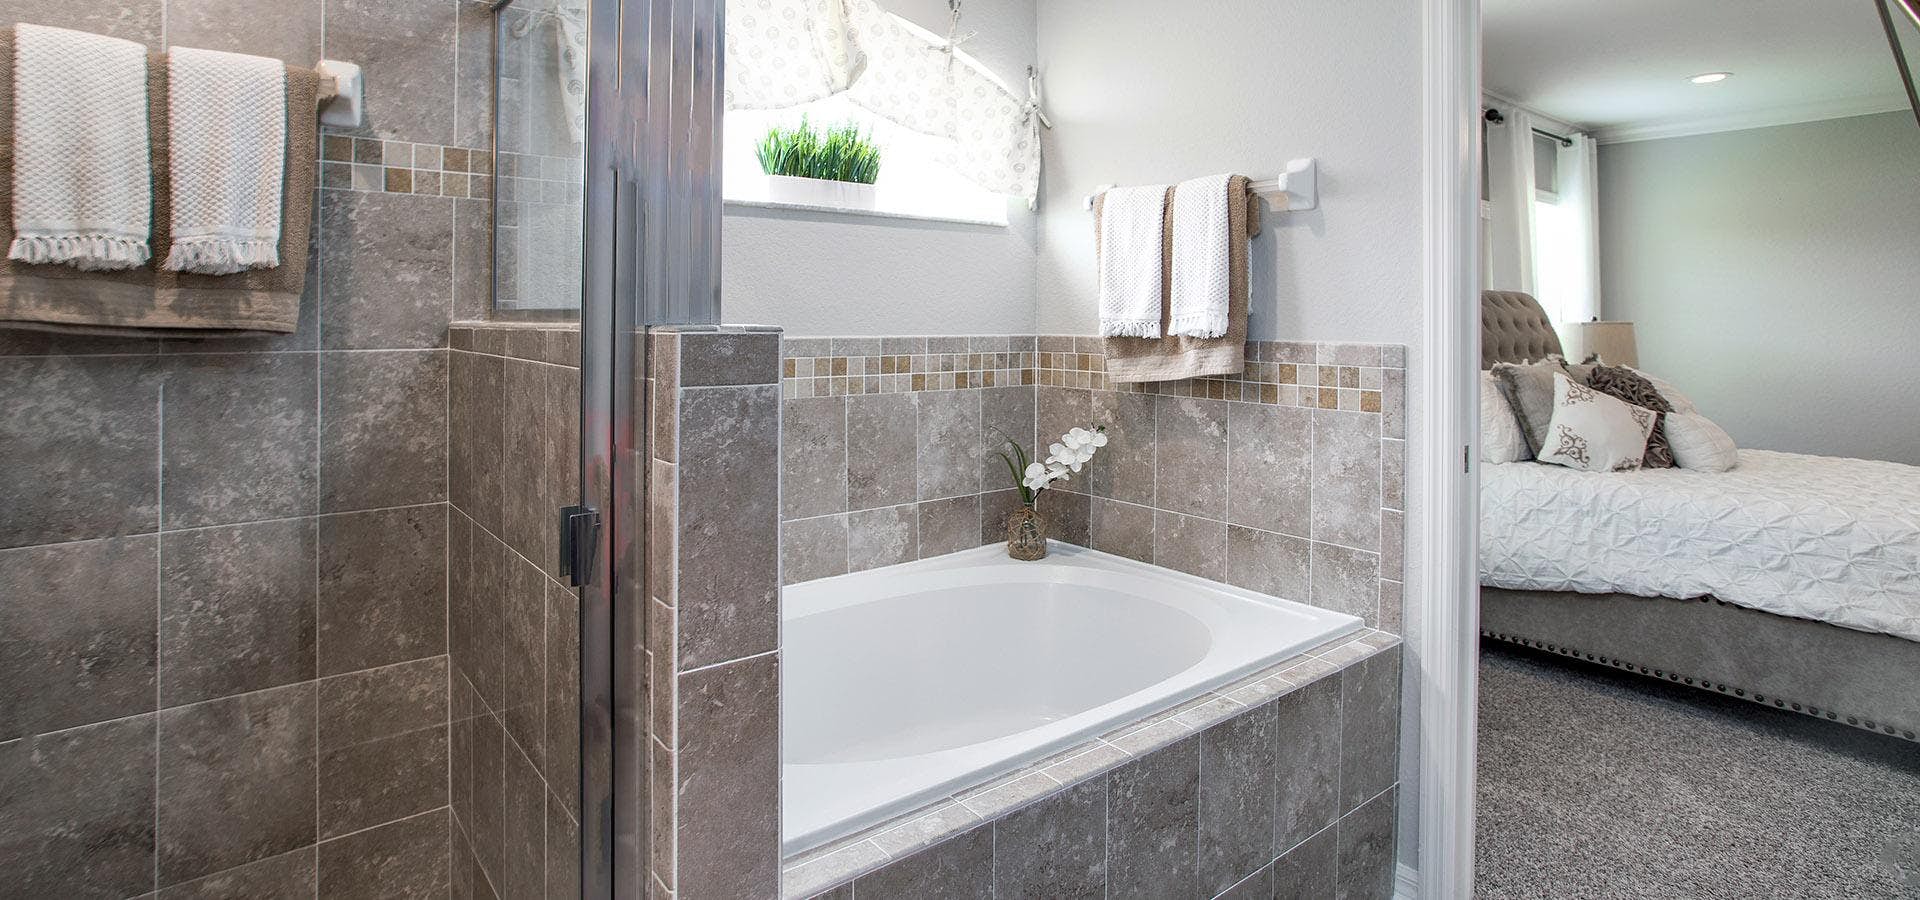 Spa-like tub in owner's en-suite bathroom